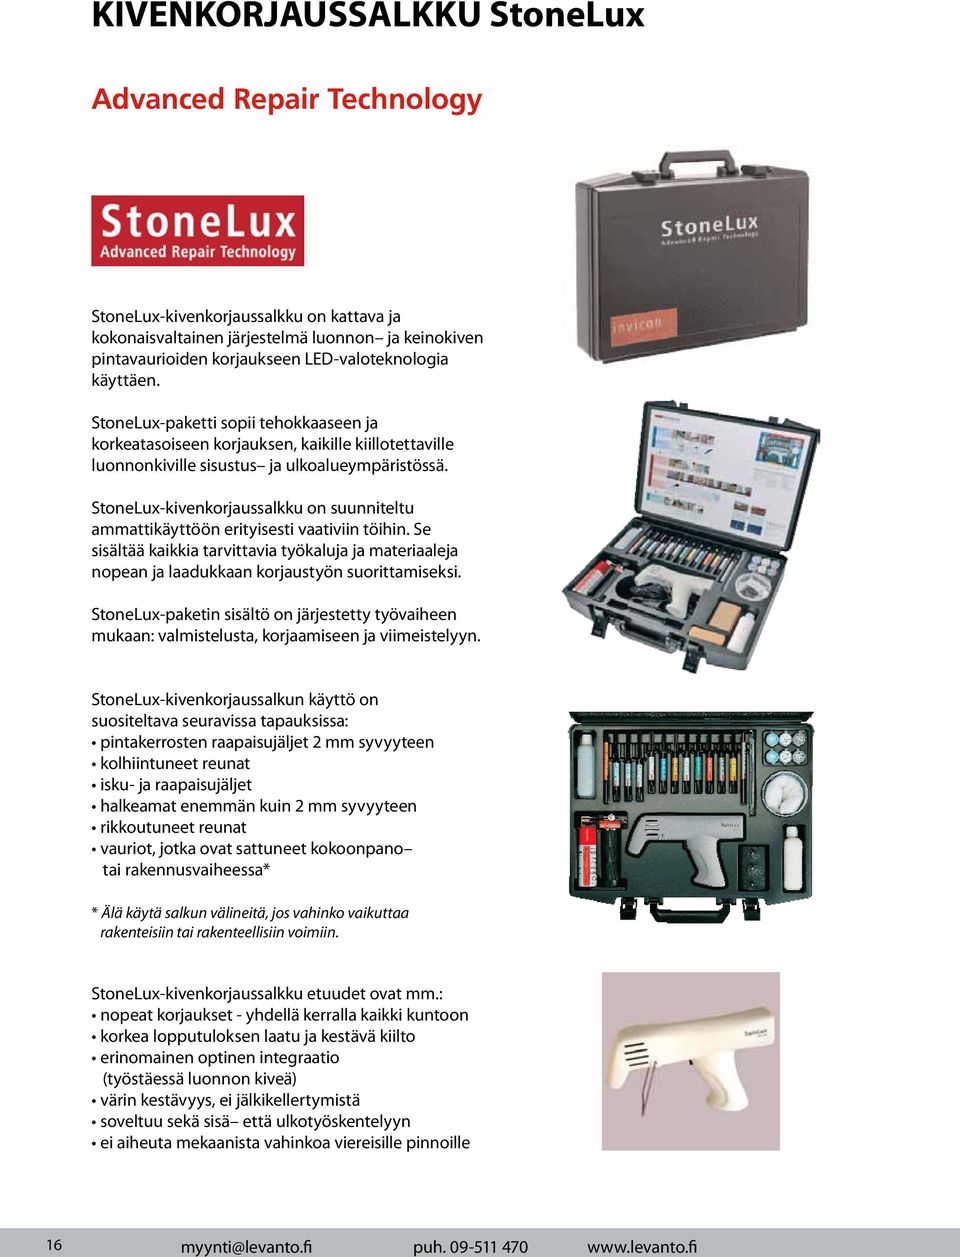 StoneLux-kivenkorjaussalkku on suunniteltu ammattikäyttöön erityisesti vaativiin töihin. Se sisältää kaikkia tarvittavia työkaluja ja materiaaleja nopean ja laadukkaan korjaustyön suorittamiseksi.